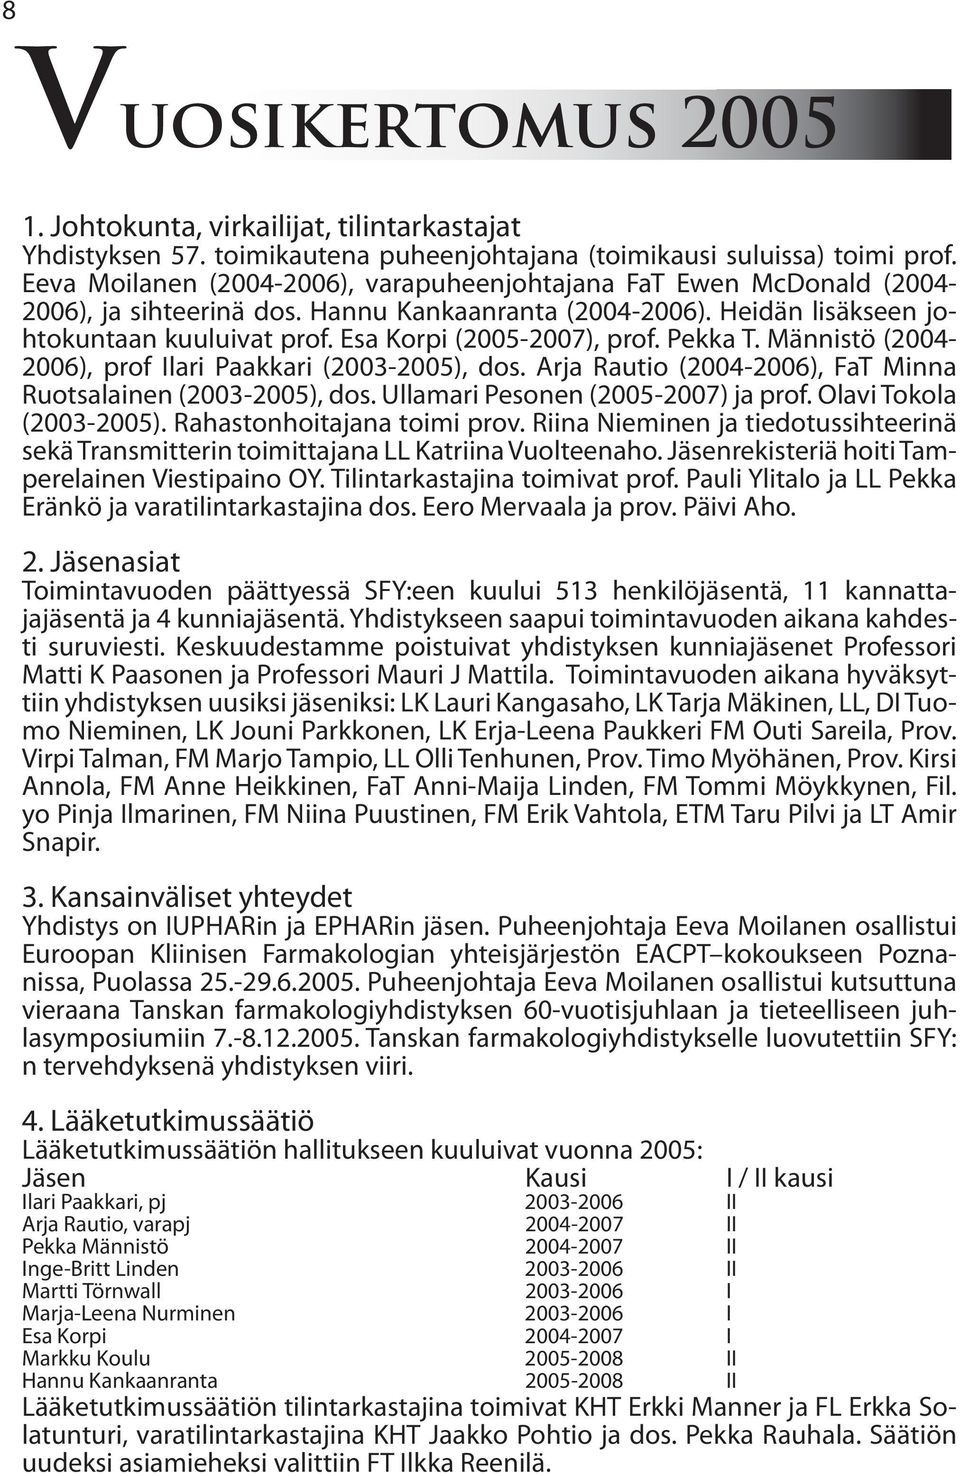 Esa Korpi (2005-2007), prof. Pekka T. Männistö (2004-2006), prof Ilari Paakkari (2003-2005), dos. Arja Rautio (2004-2006), FaT Minna Ruotsalainen (2003-2005), dos.